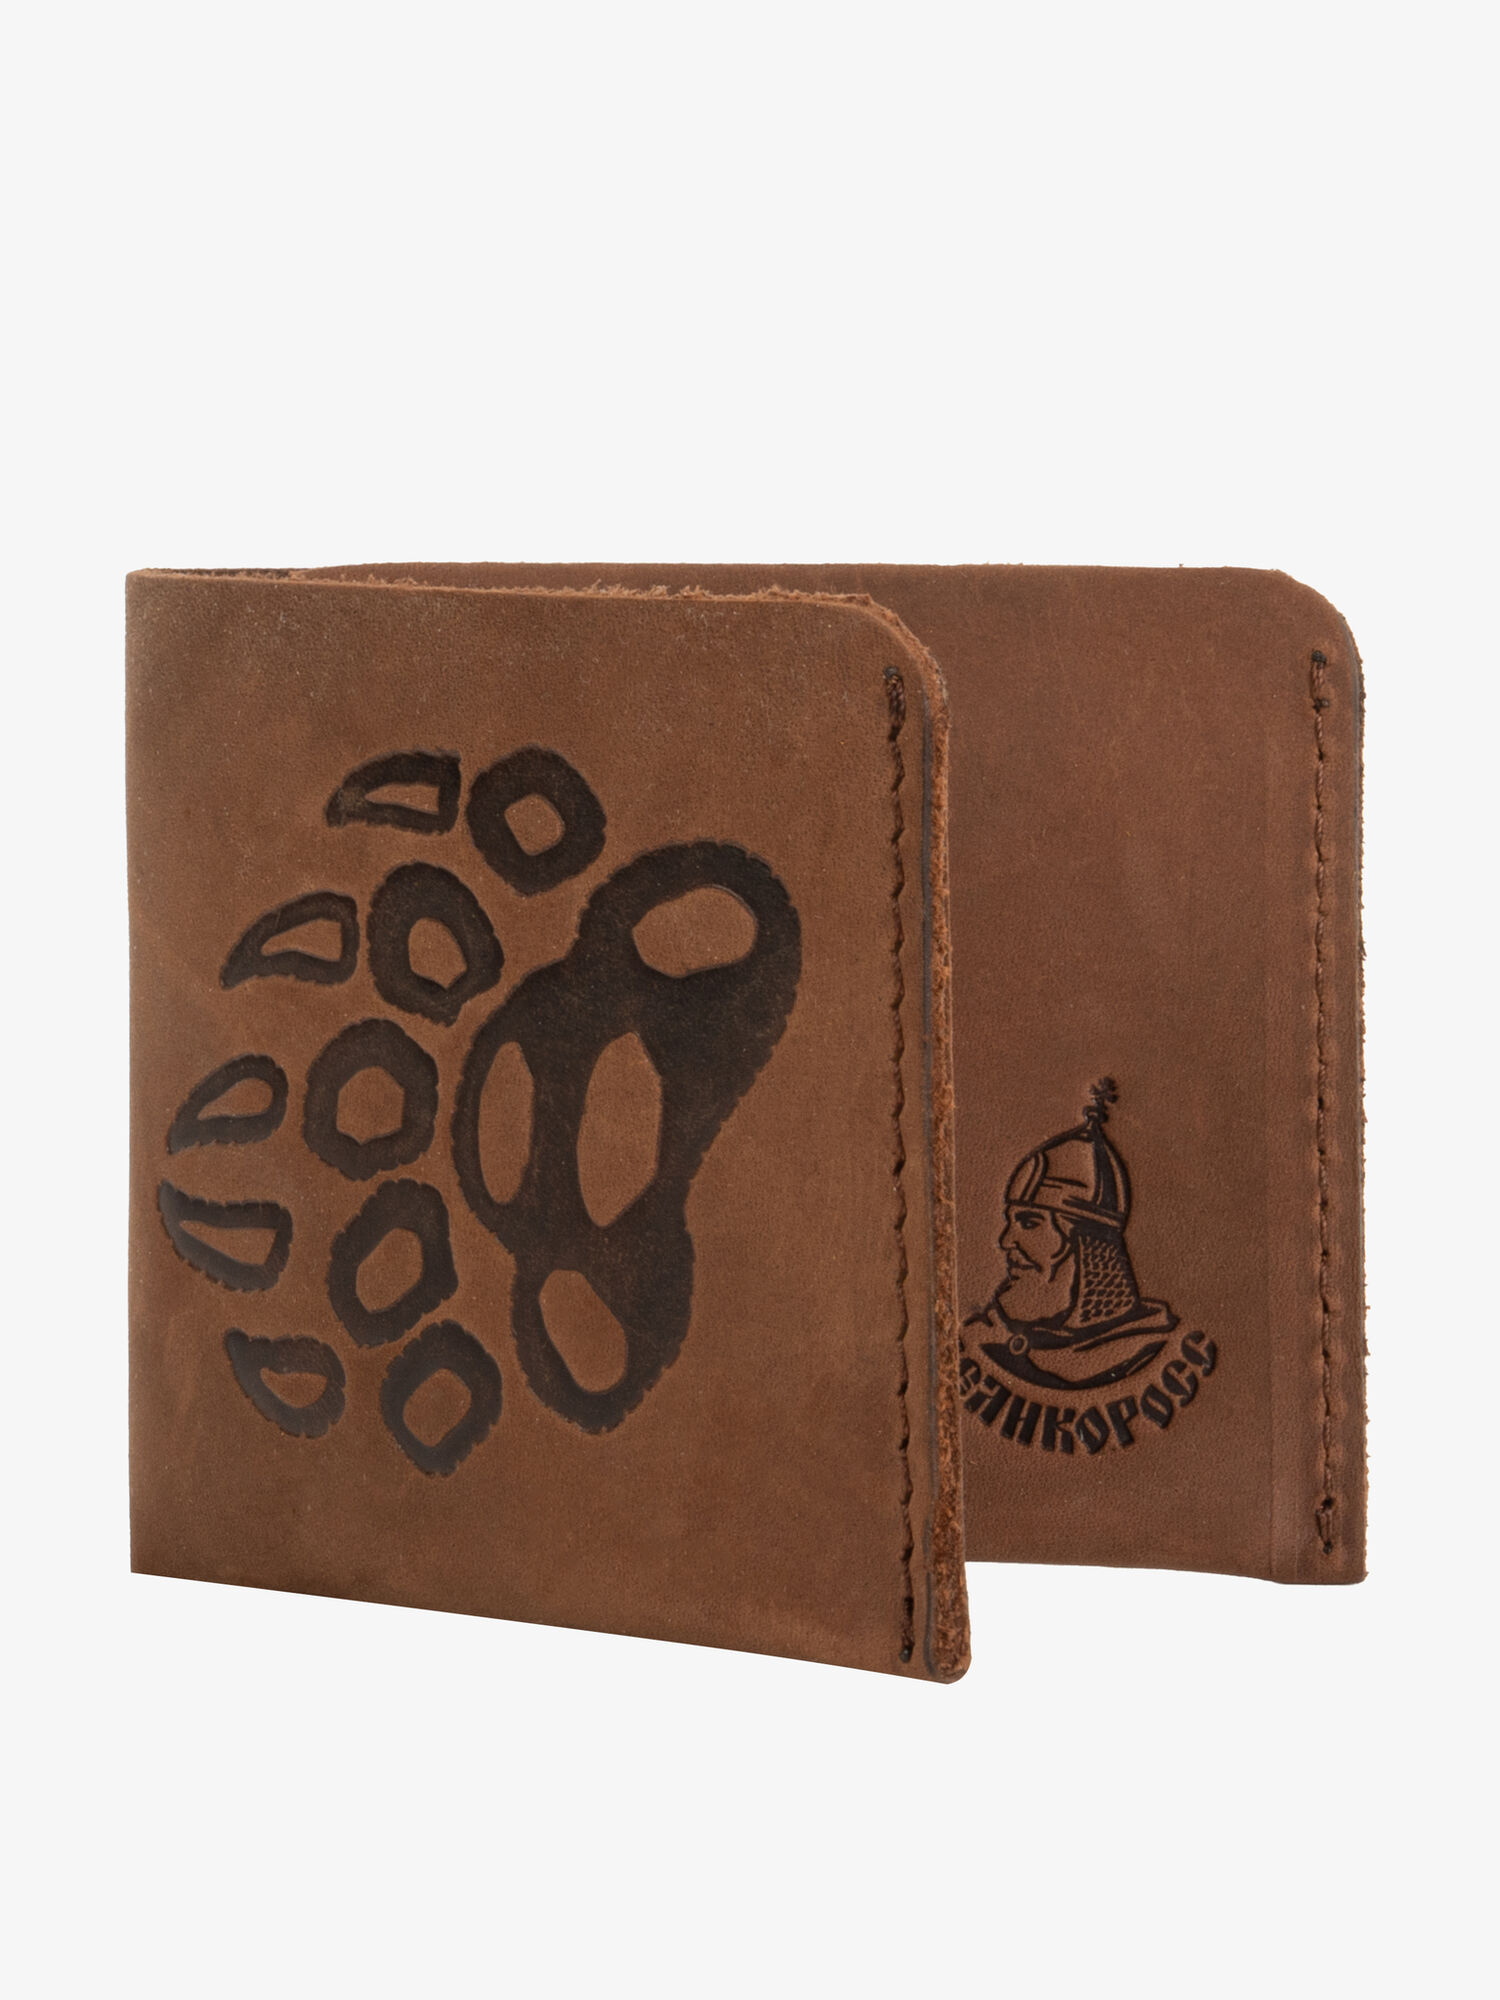 Бумажник-Компактный из натуральной кожи «Крейзи» цвета молочного шоколада